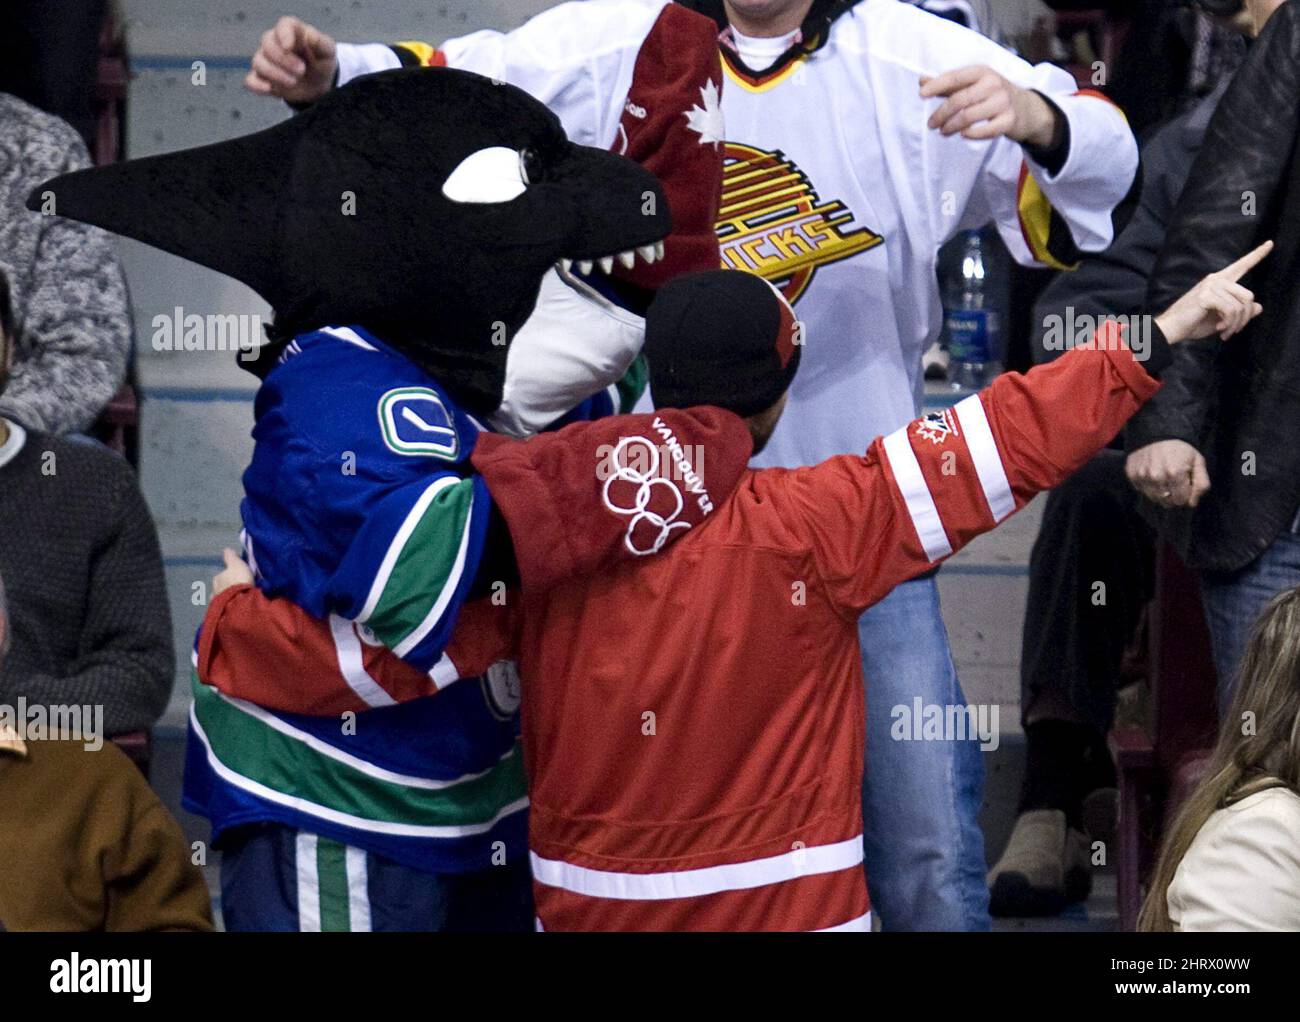 Fin, la mascotte Canuck de Vancouver porte une paire de moufles rouges  olympiques alors qu'il s'affronte avec un fan pendant la troisième période  d'un match de la LNH entre les Canucks et